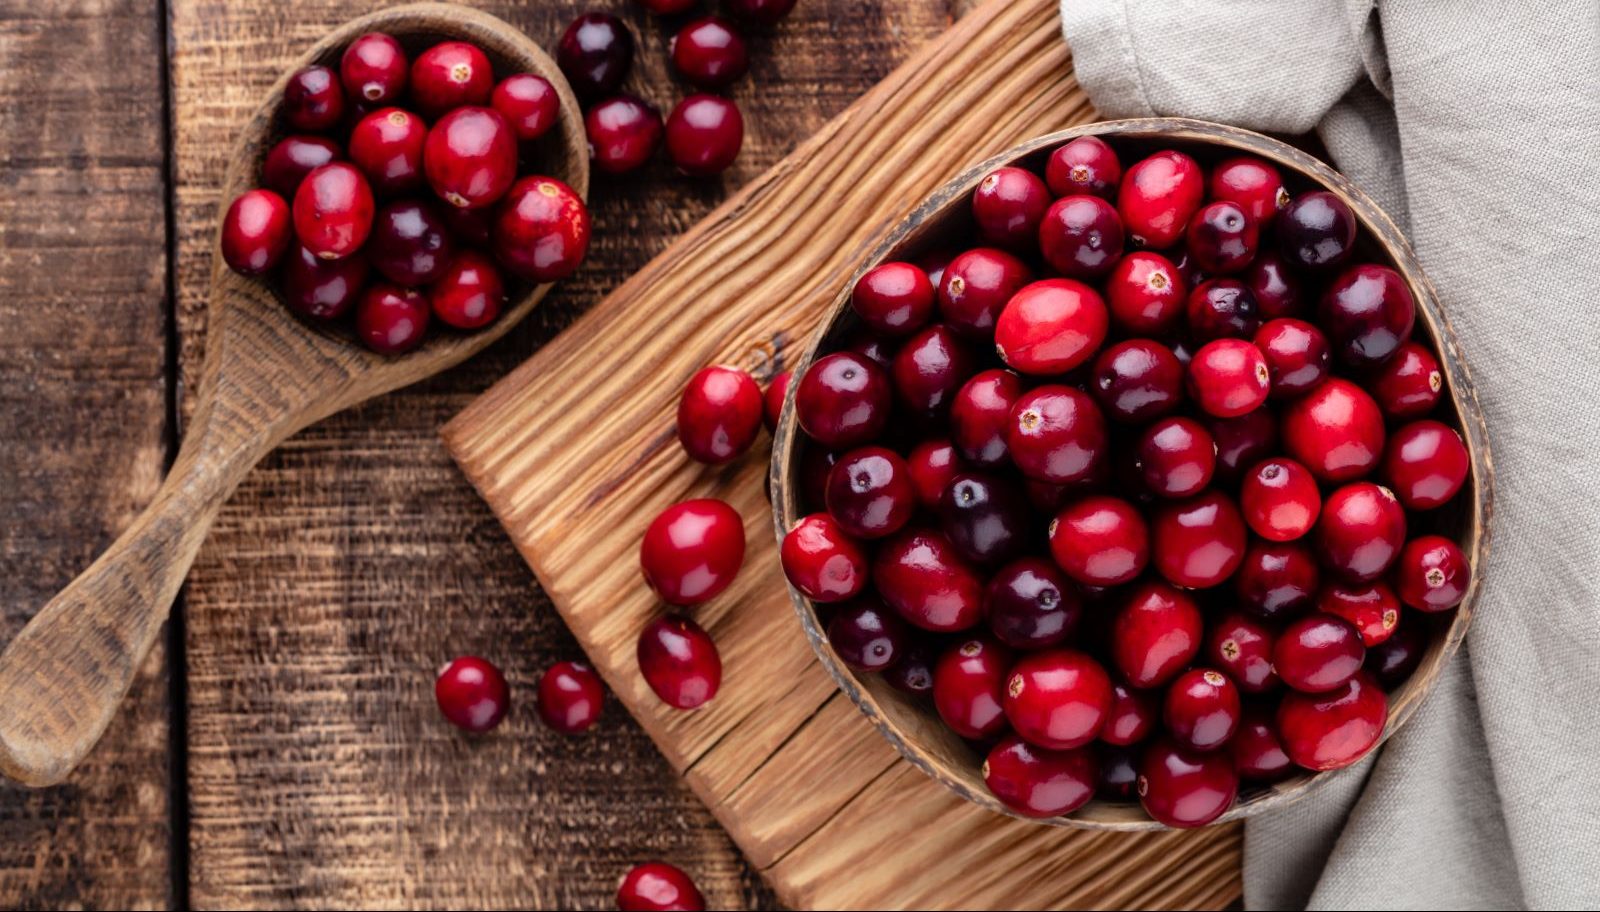 Cranberries have surprising health benefits.